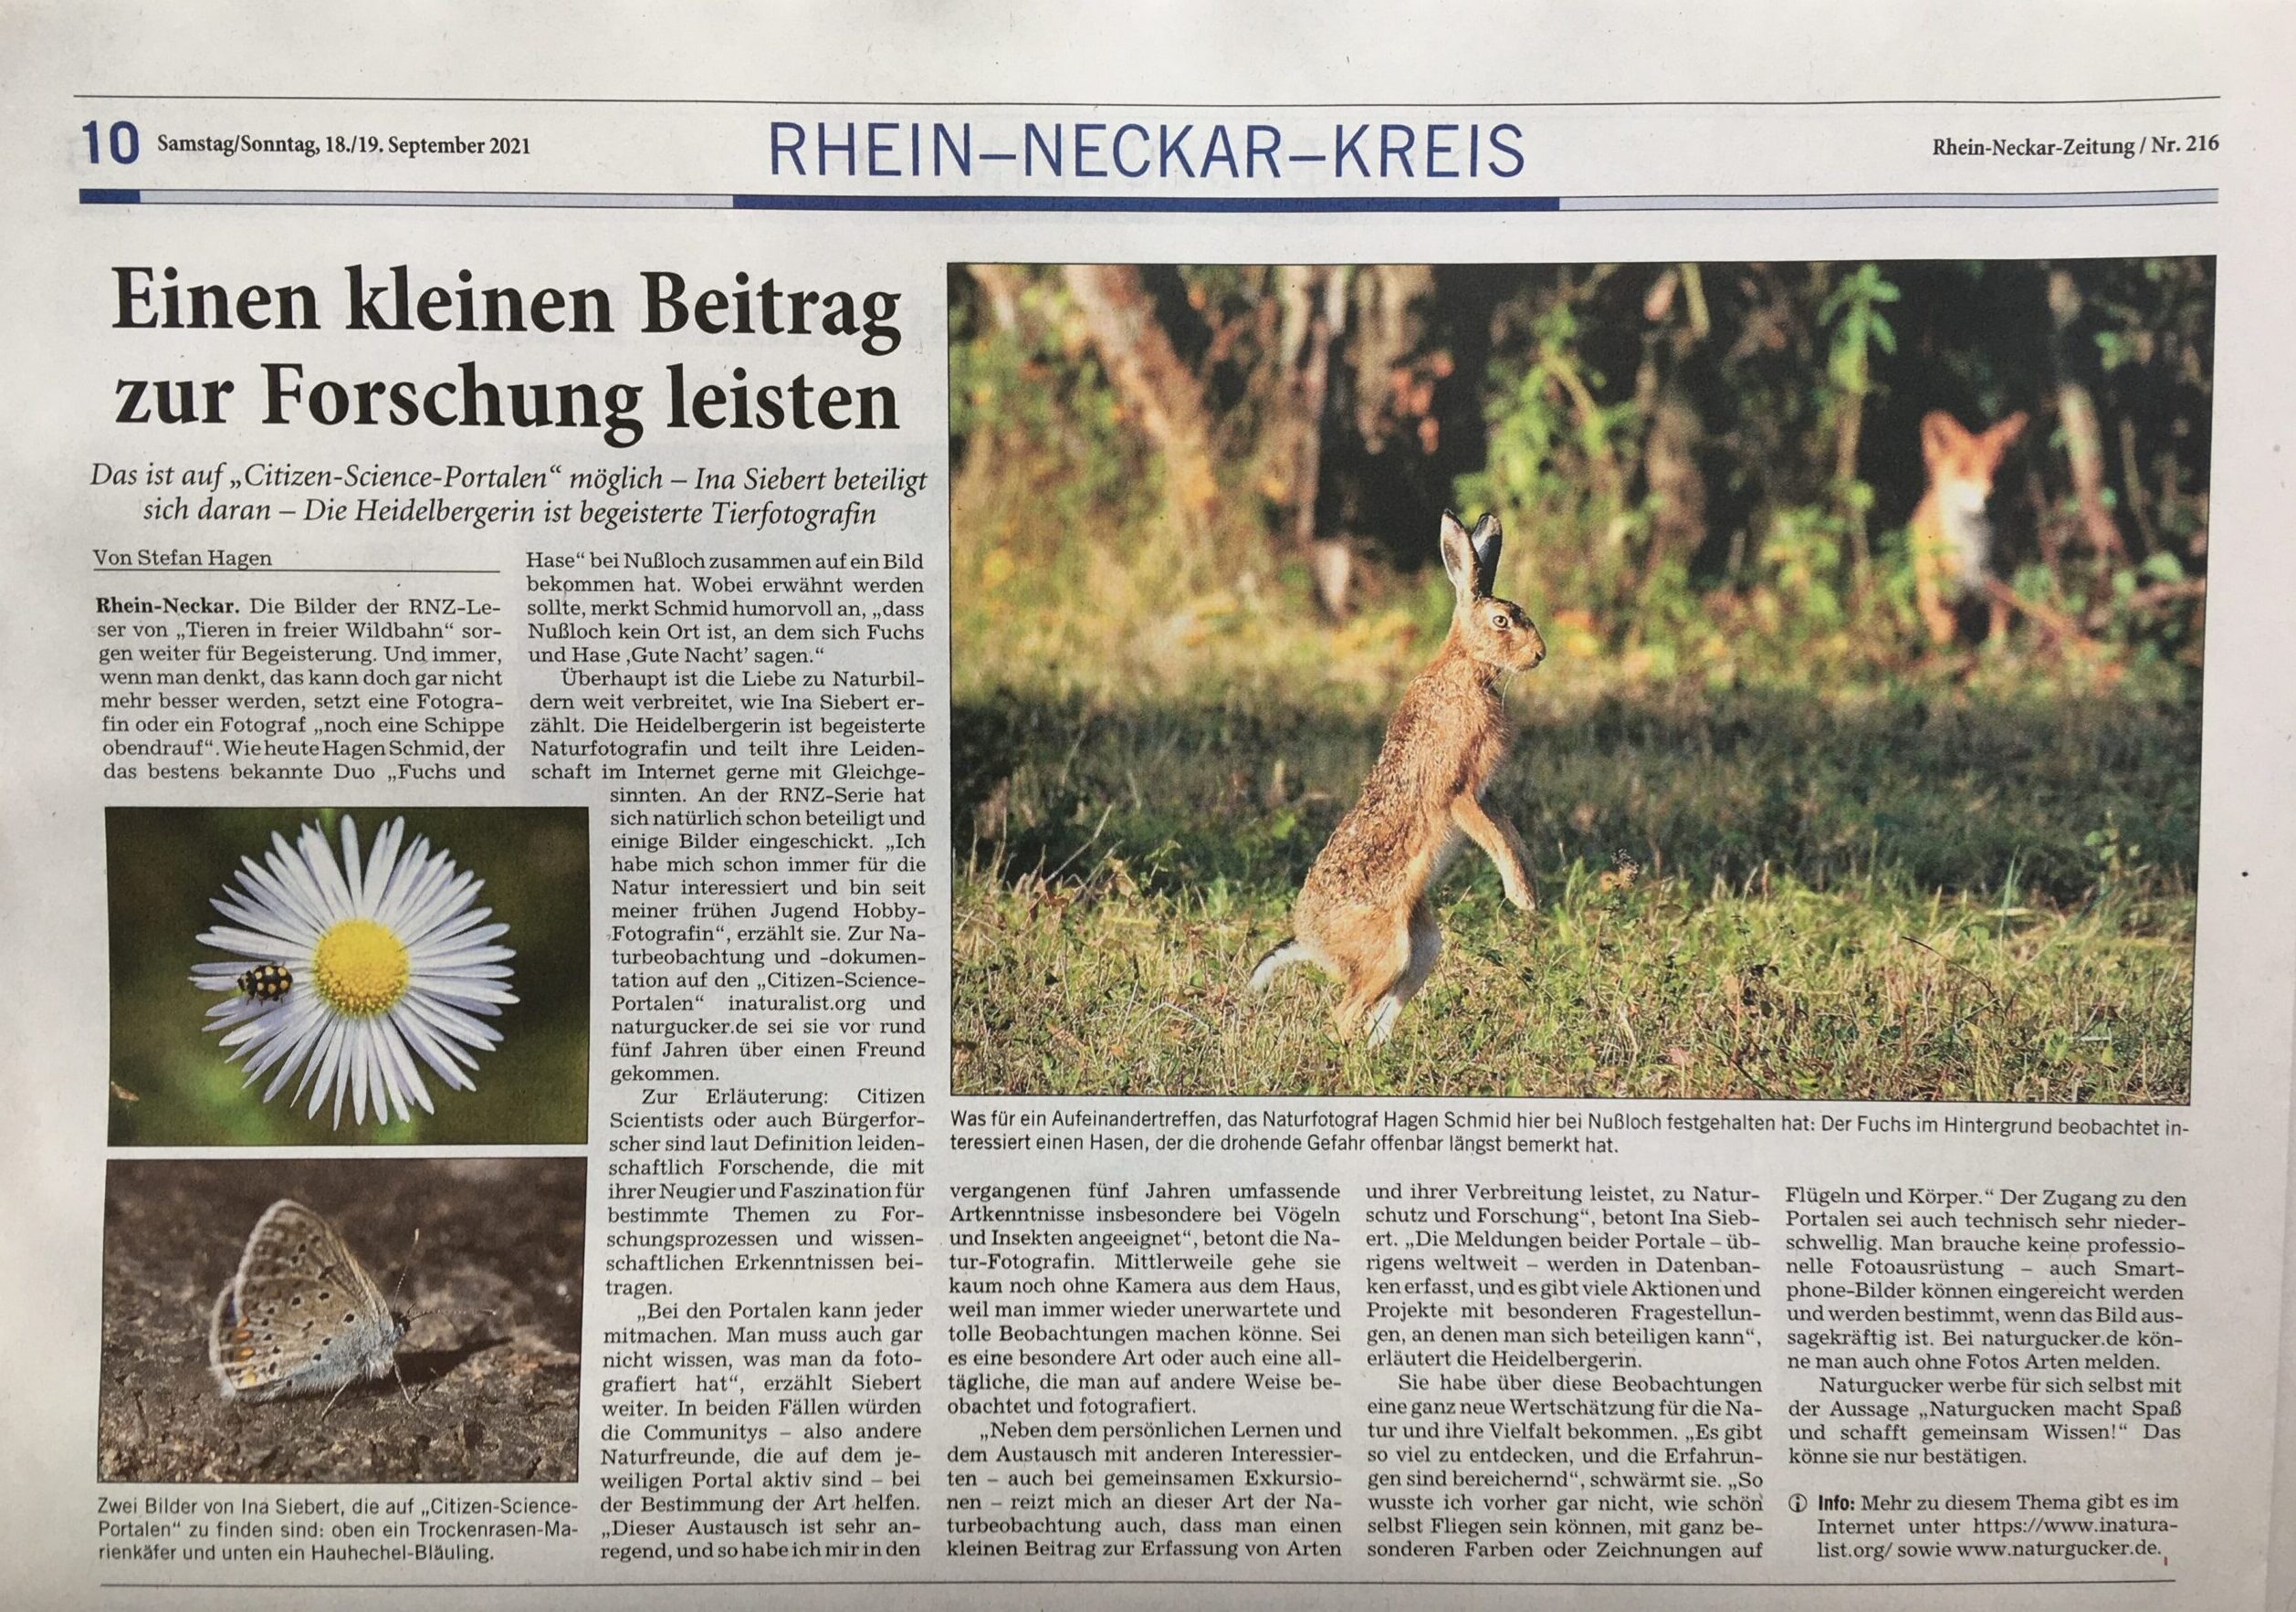 Meine Leidenschaft in der Rhein-Neckar-Zeitung